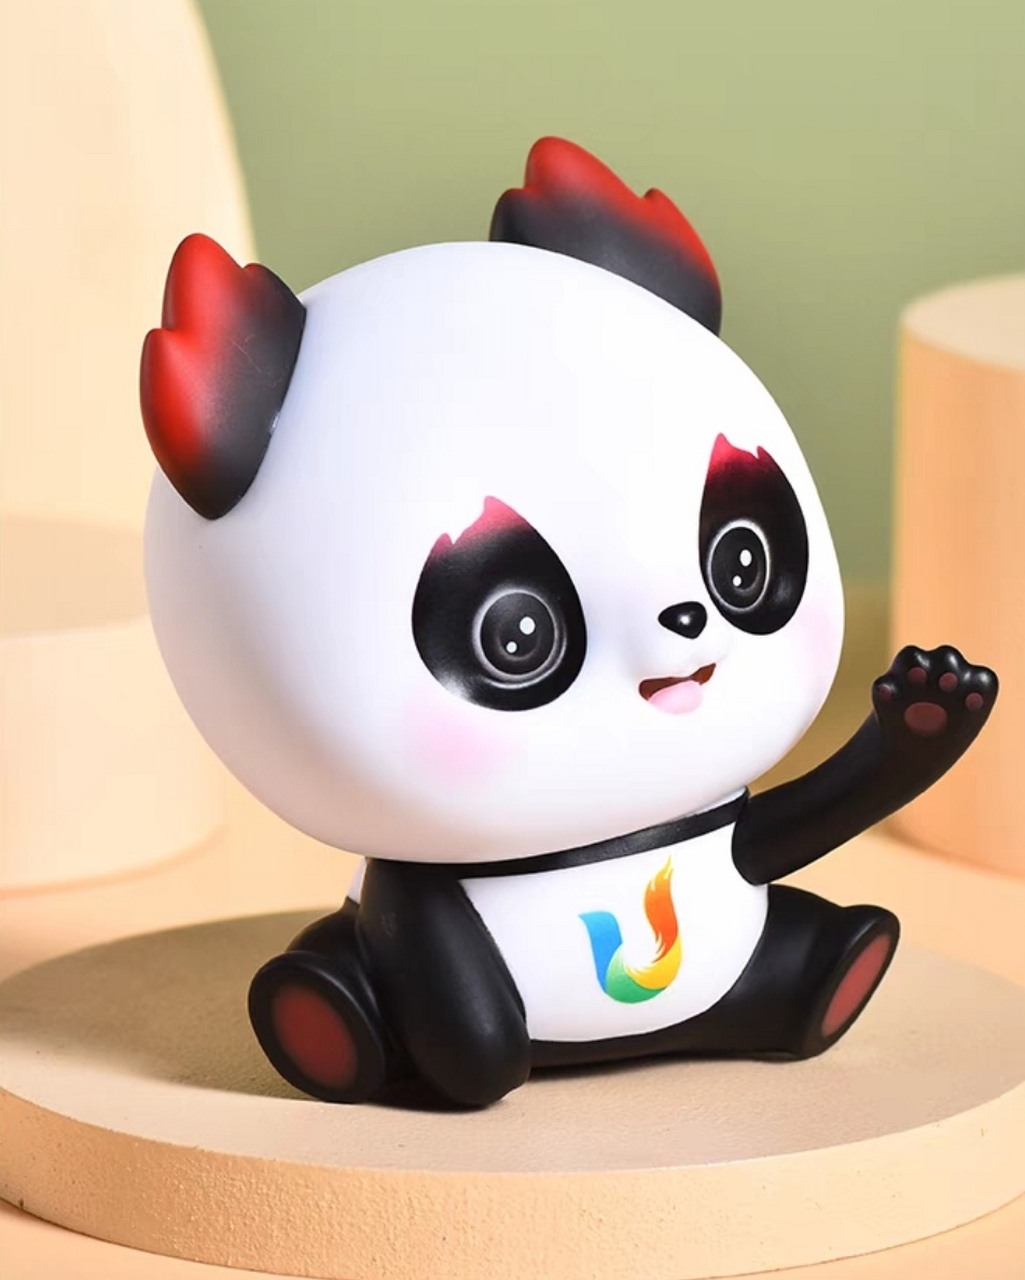 成都大运会旗舰店蓉宝吉祥物创意玩偶摆件熊猫手办!